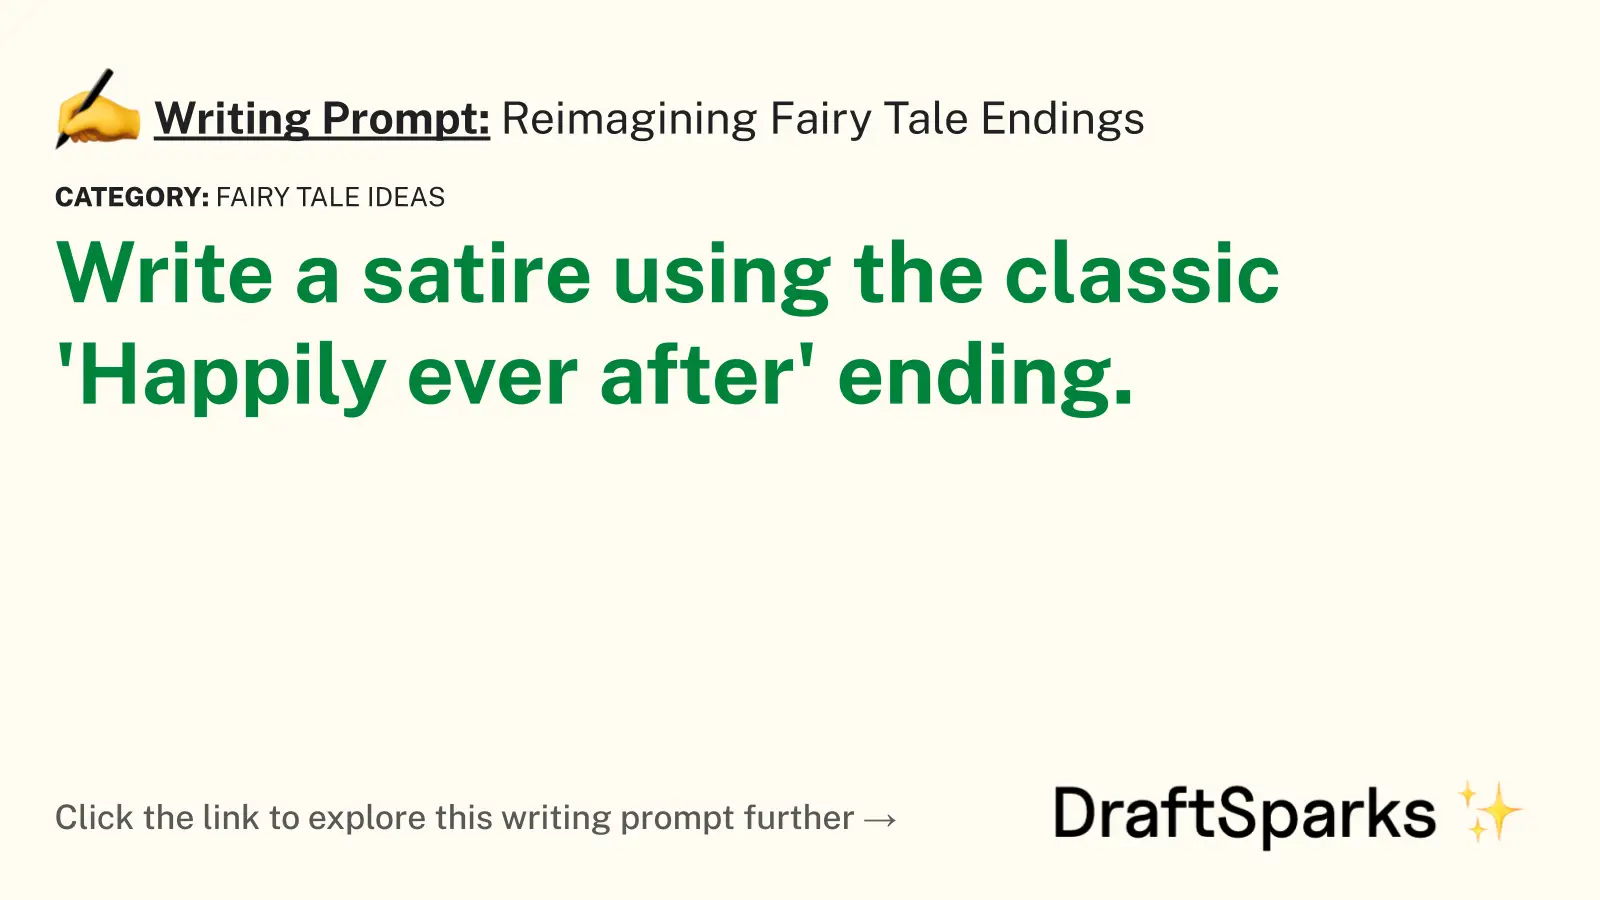 Reimagining Fairy Tale Endings